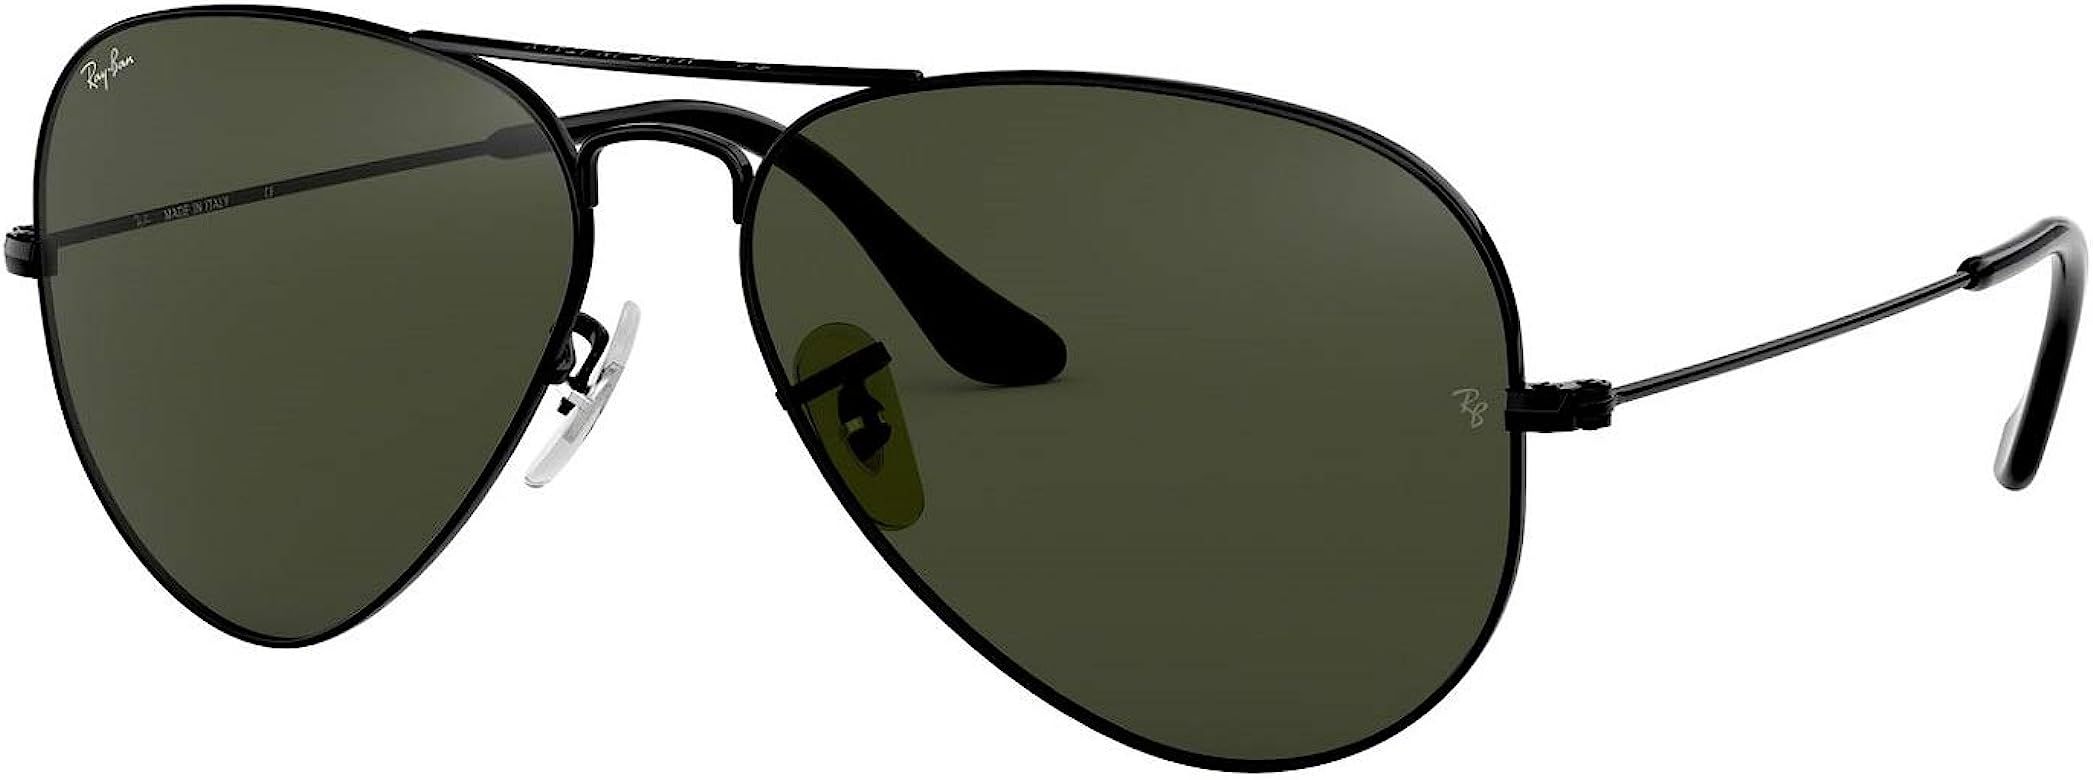 Ray Ban RB3025 Metal Aviator Sunglasses | Amazon (US)